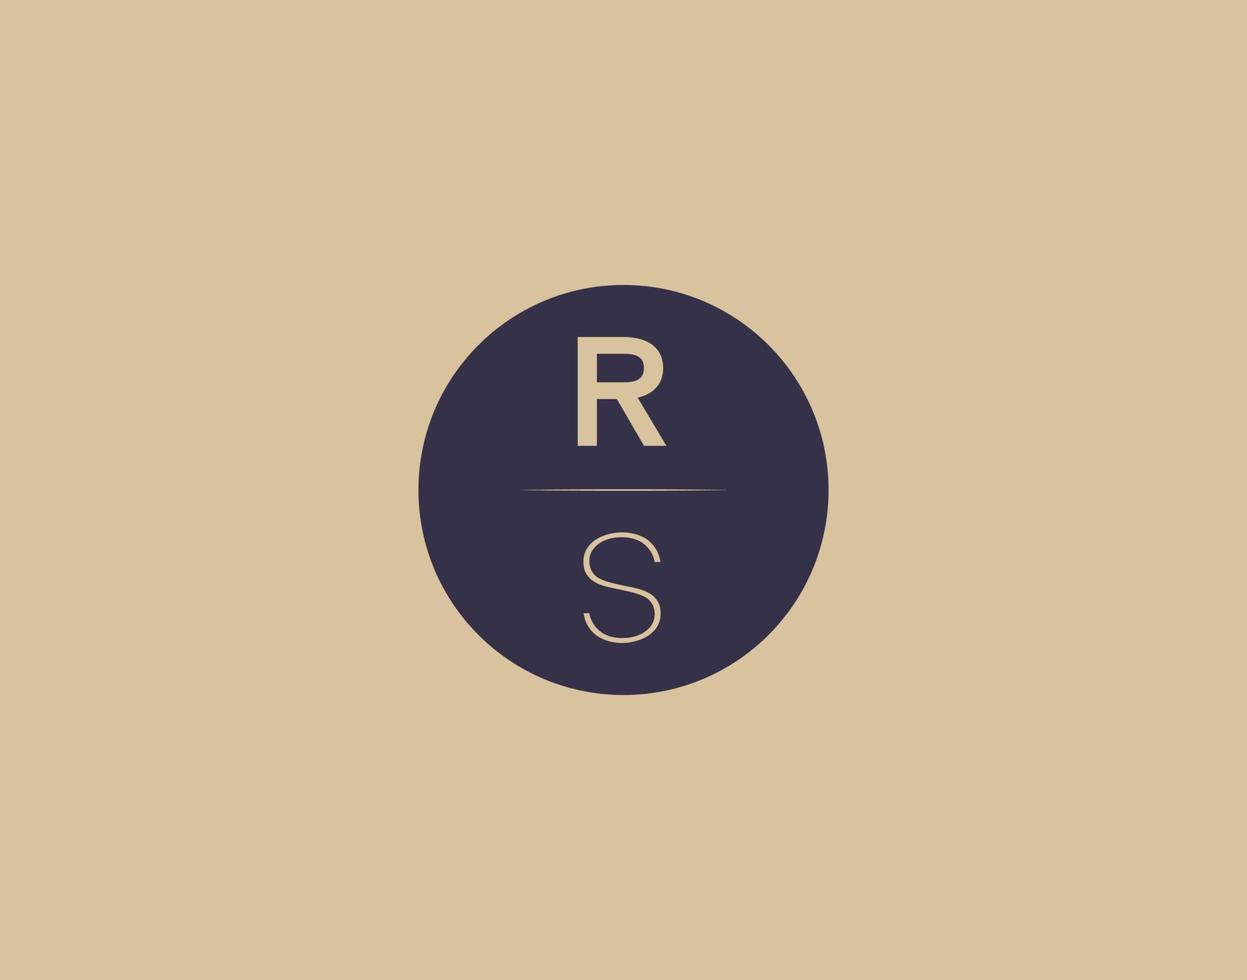 rs brief modern elegant logo ontwerp vector afbeeldingen